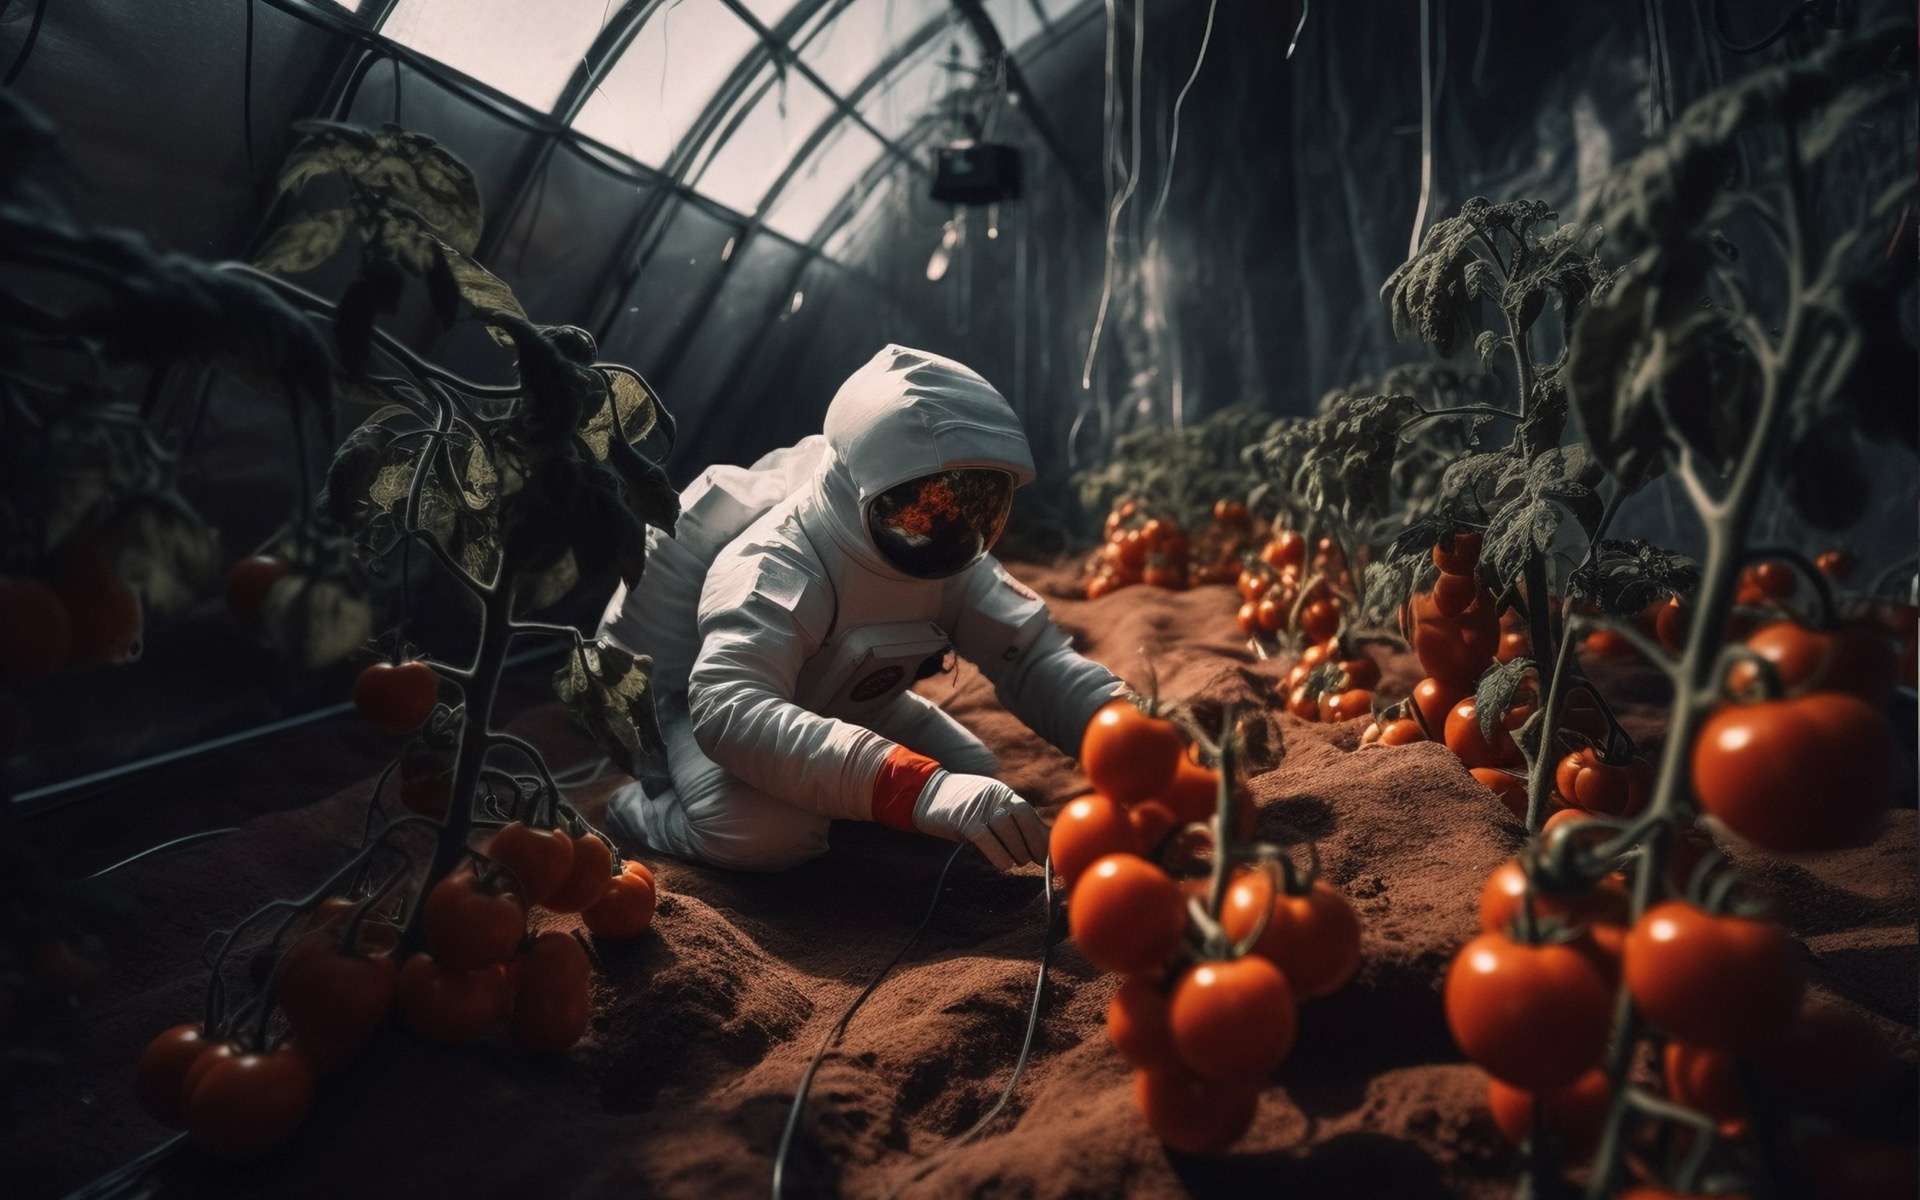 La Nasa donne des nouvelles des tomates perdues et retrouvées dans la Station spatiale